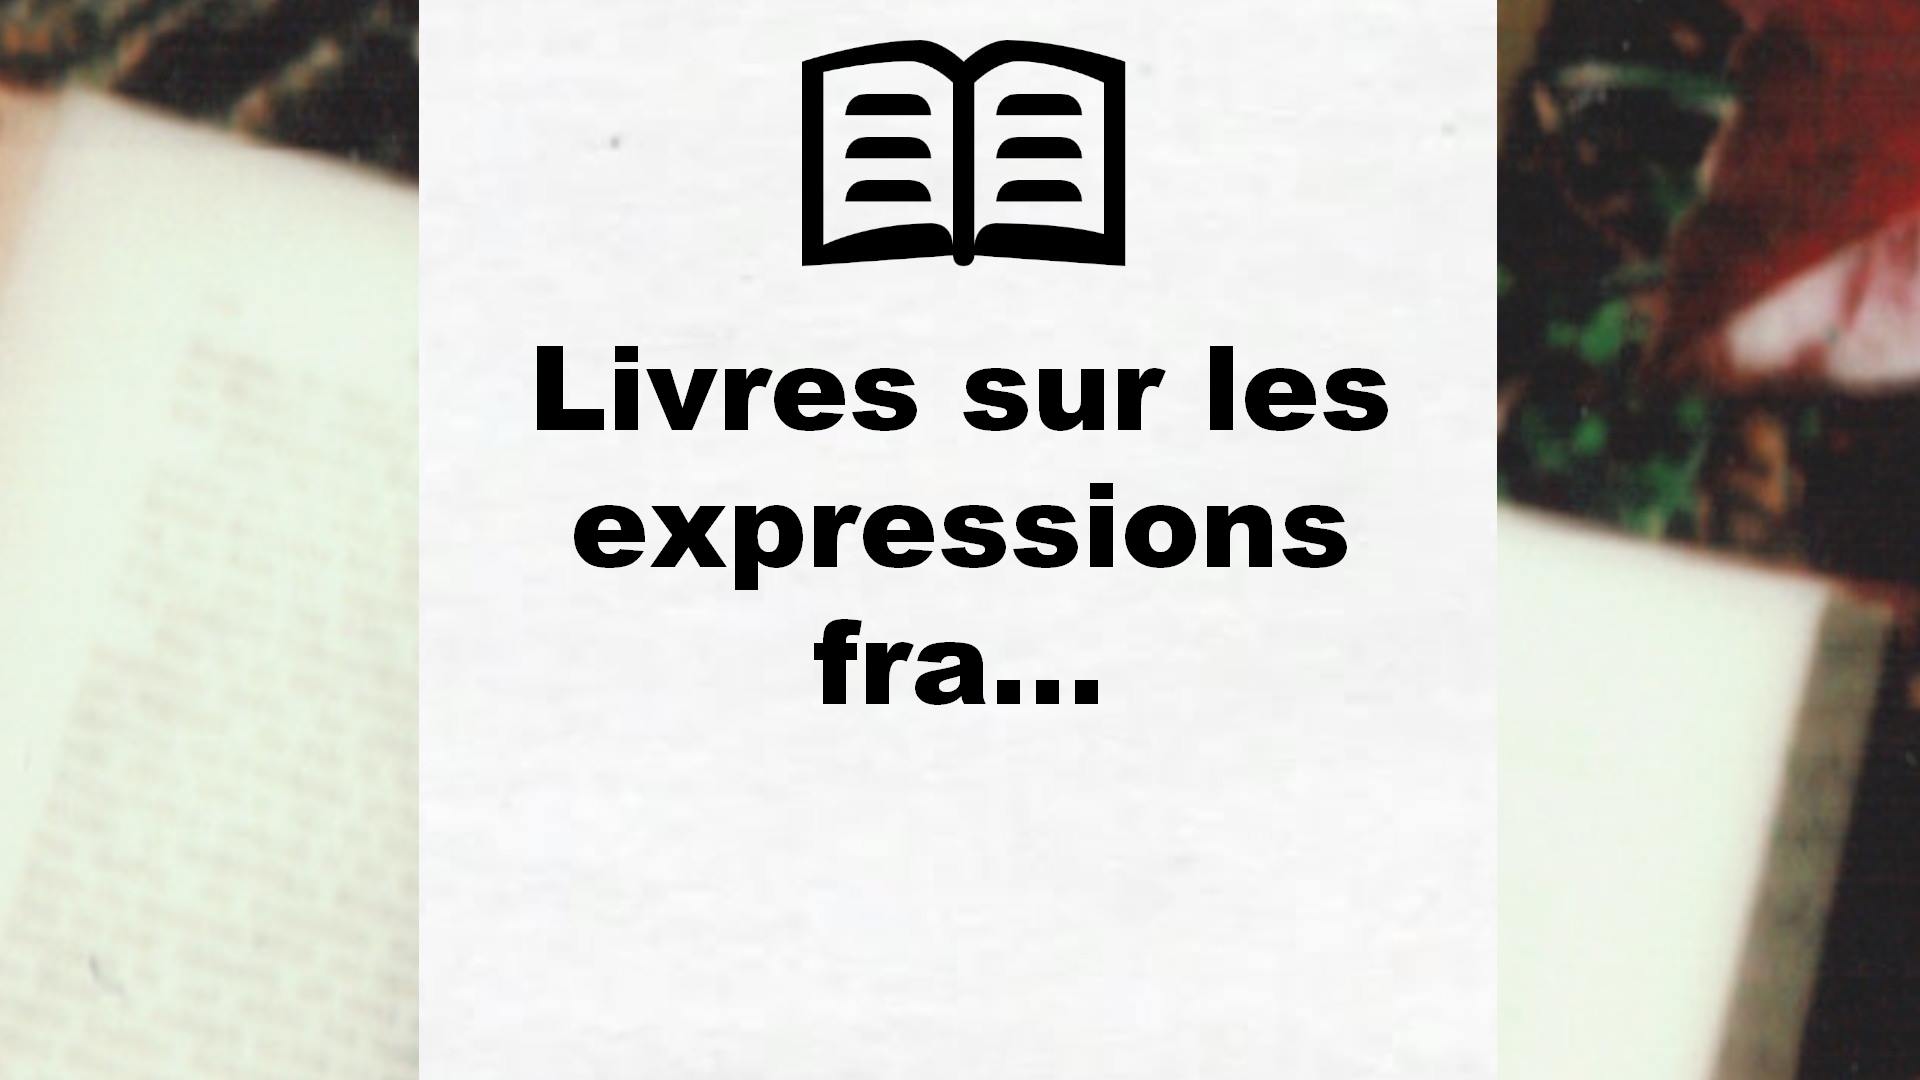 Livres sur les expressions françaises